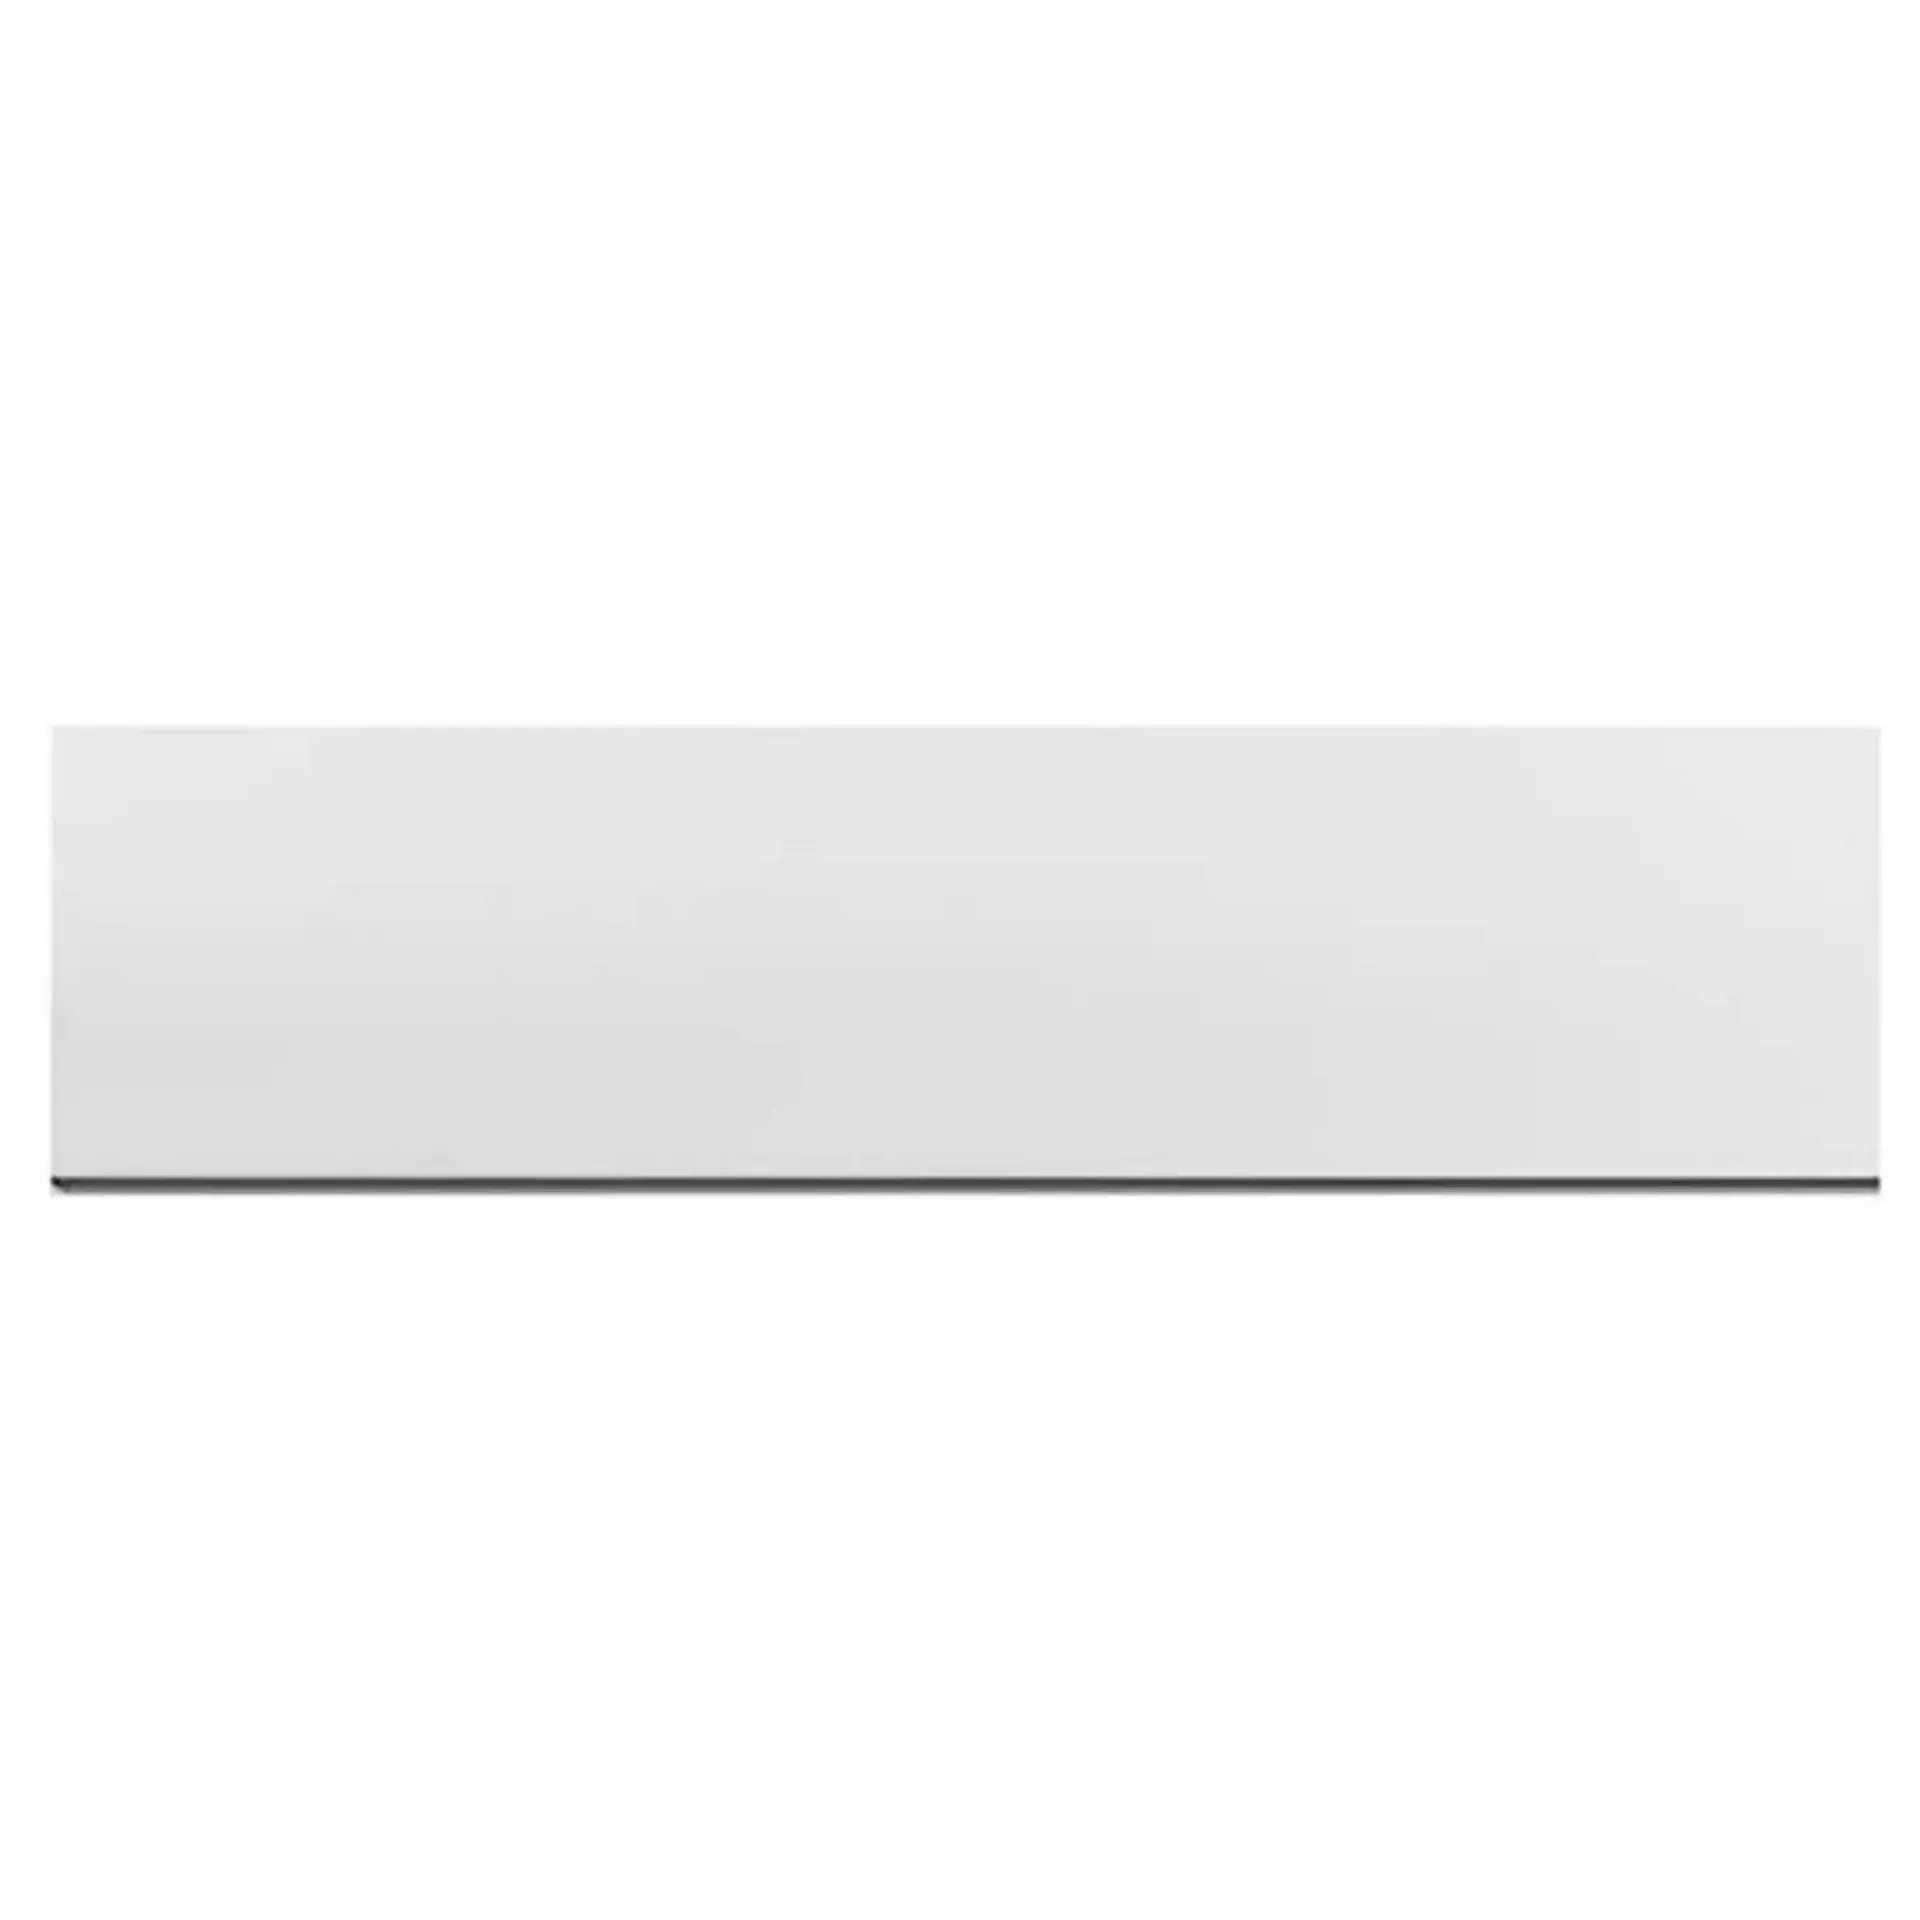 Premiercast Bath Panel Front 1800mm - White